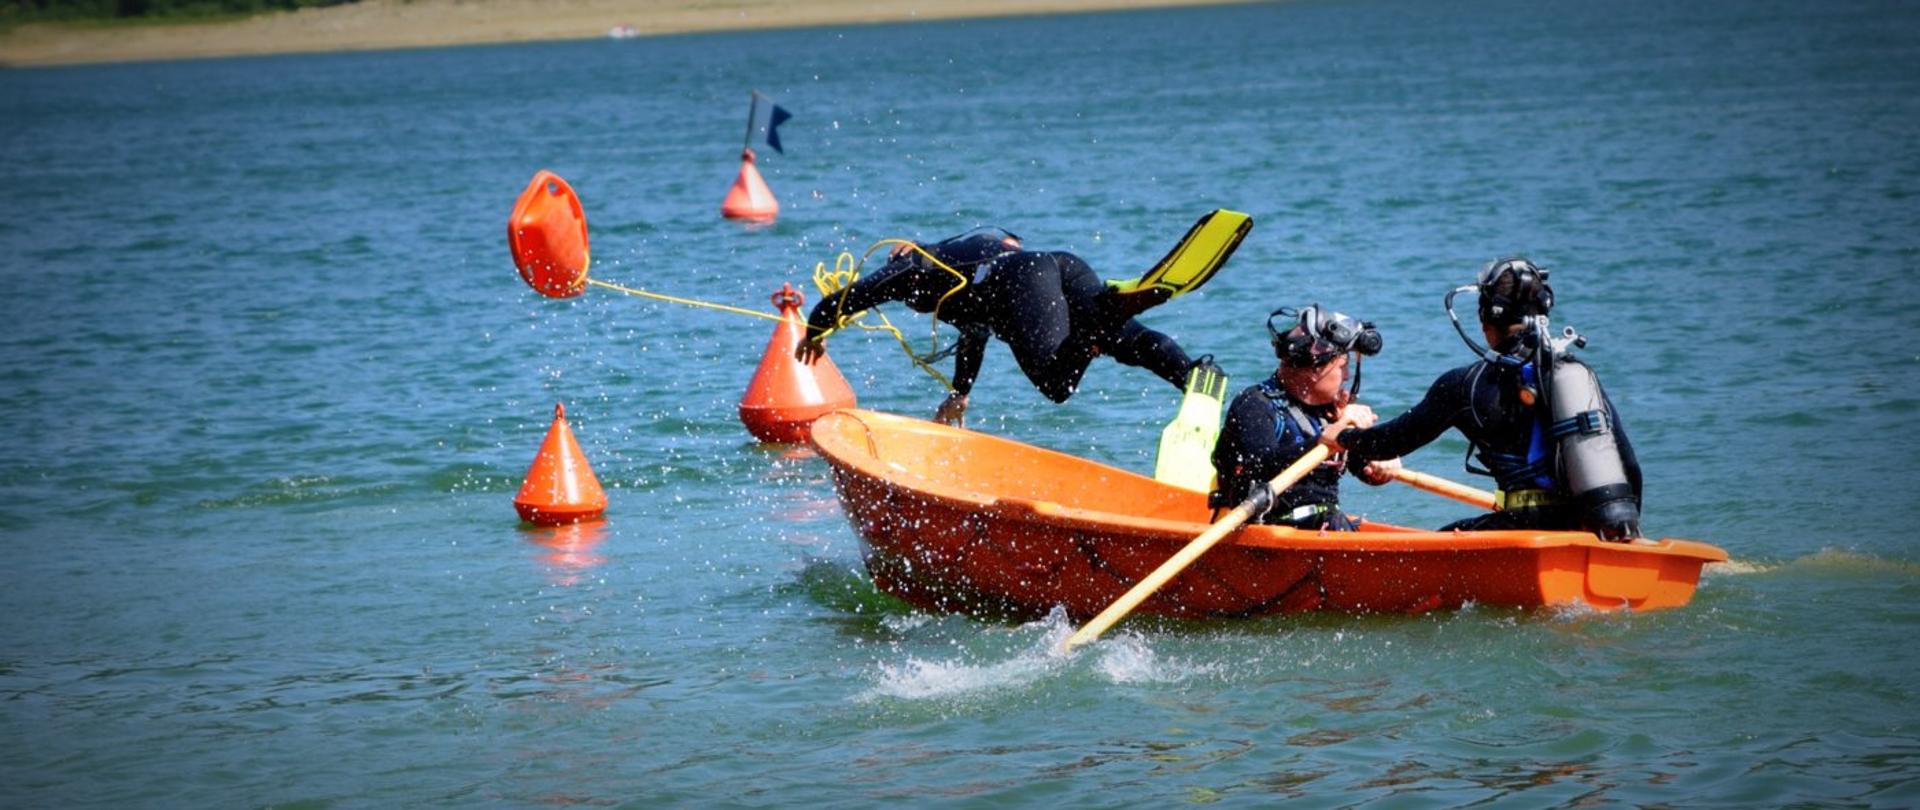 Zdjęcie zrobione nad jeziorem, podczas mistrzostw płetwonurków. Trzech strażaków nurków w łódce. Jeden z nich wyskakuje z łodzi do wody. 